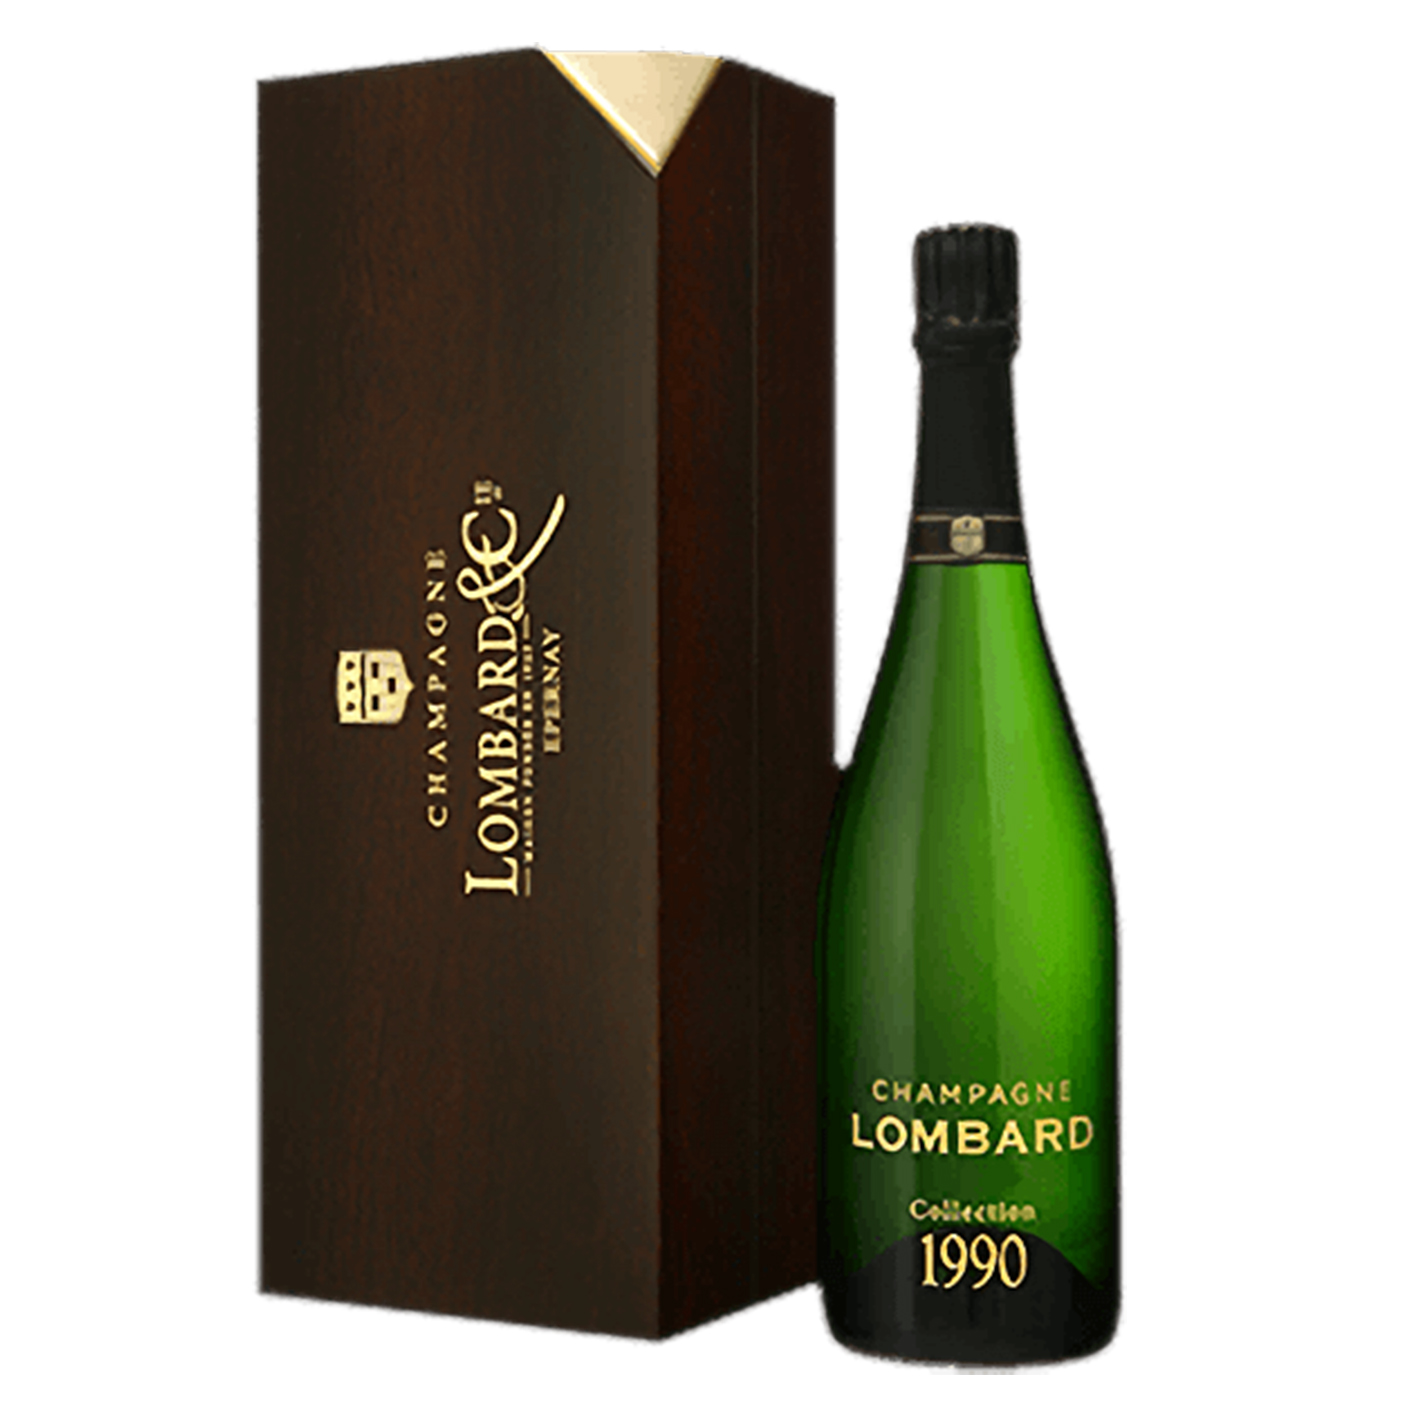 Champagne Lombard Millesime 1990. Botella de 75cl con cierre de corcho. Su etiqueta es transparente y en ella puede apreciarse, en color dorado, los nombres de la bodega y de este vino espumoso. En este caso, Champagne Lombard Collection 1990.